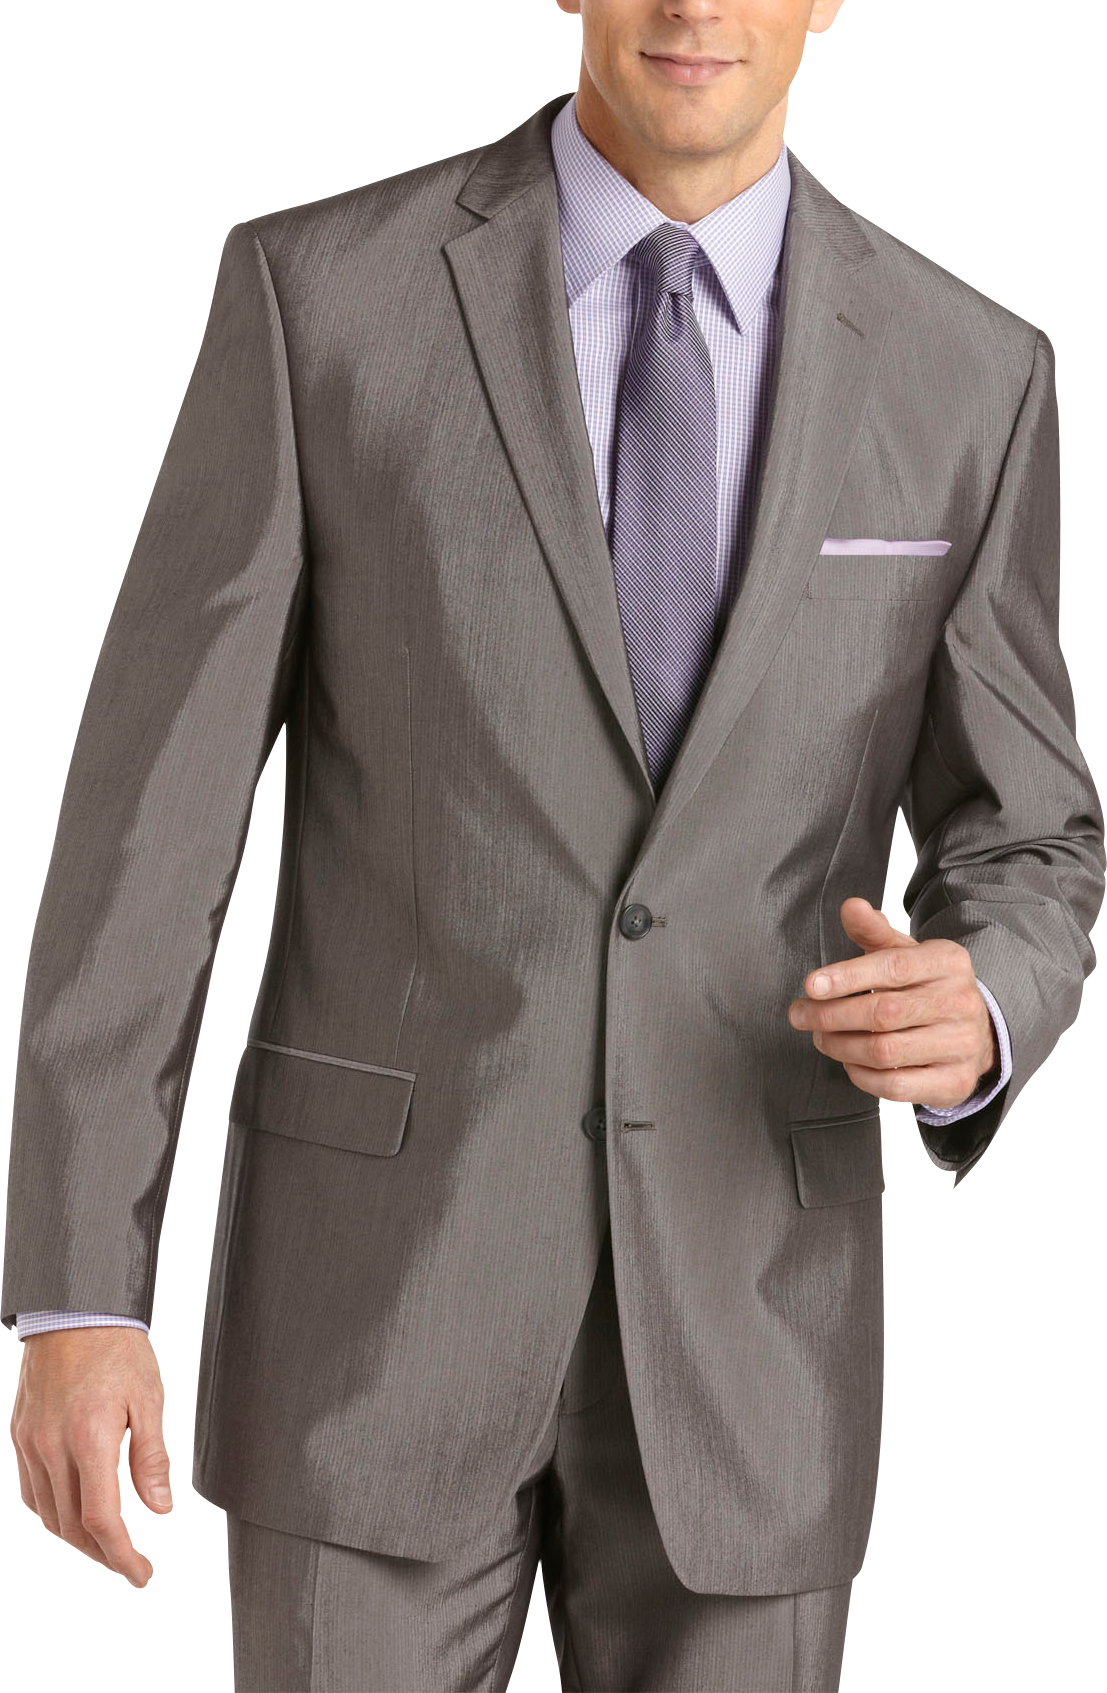 Mens Gray Suit | Men's Wearhouse | Male Gray Suit, Gentlemen Gray Suit